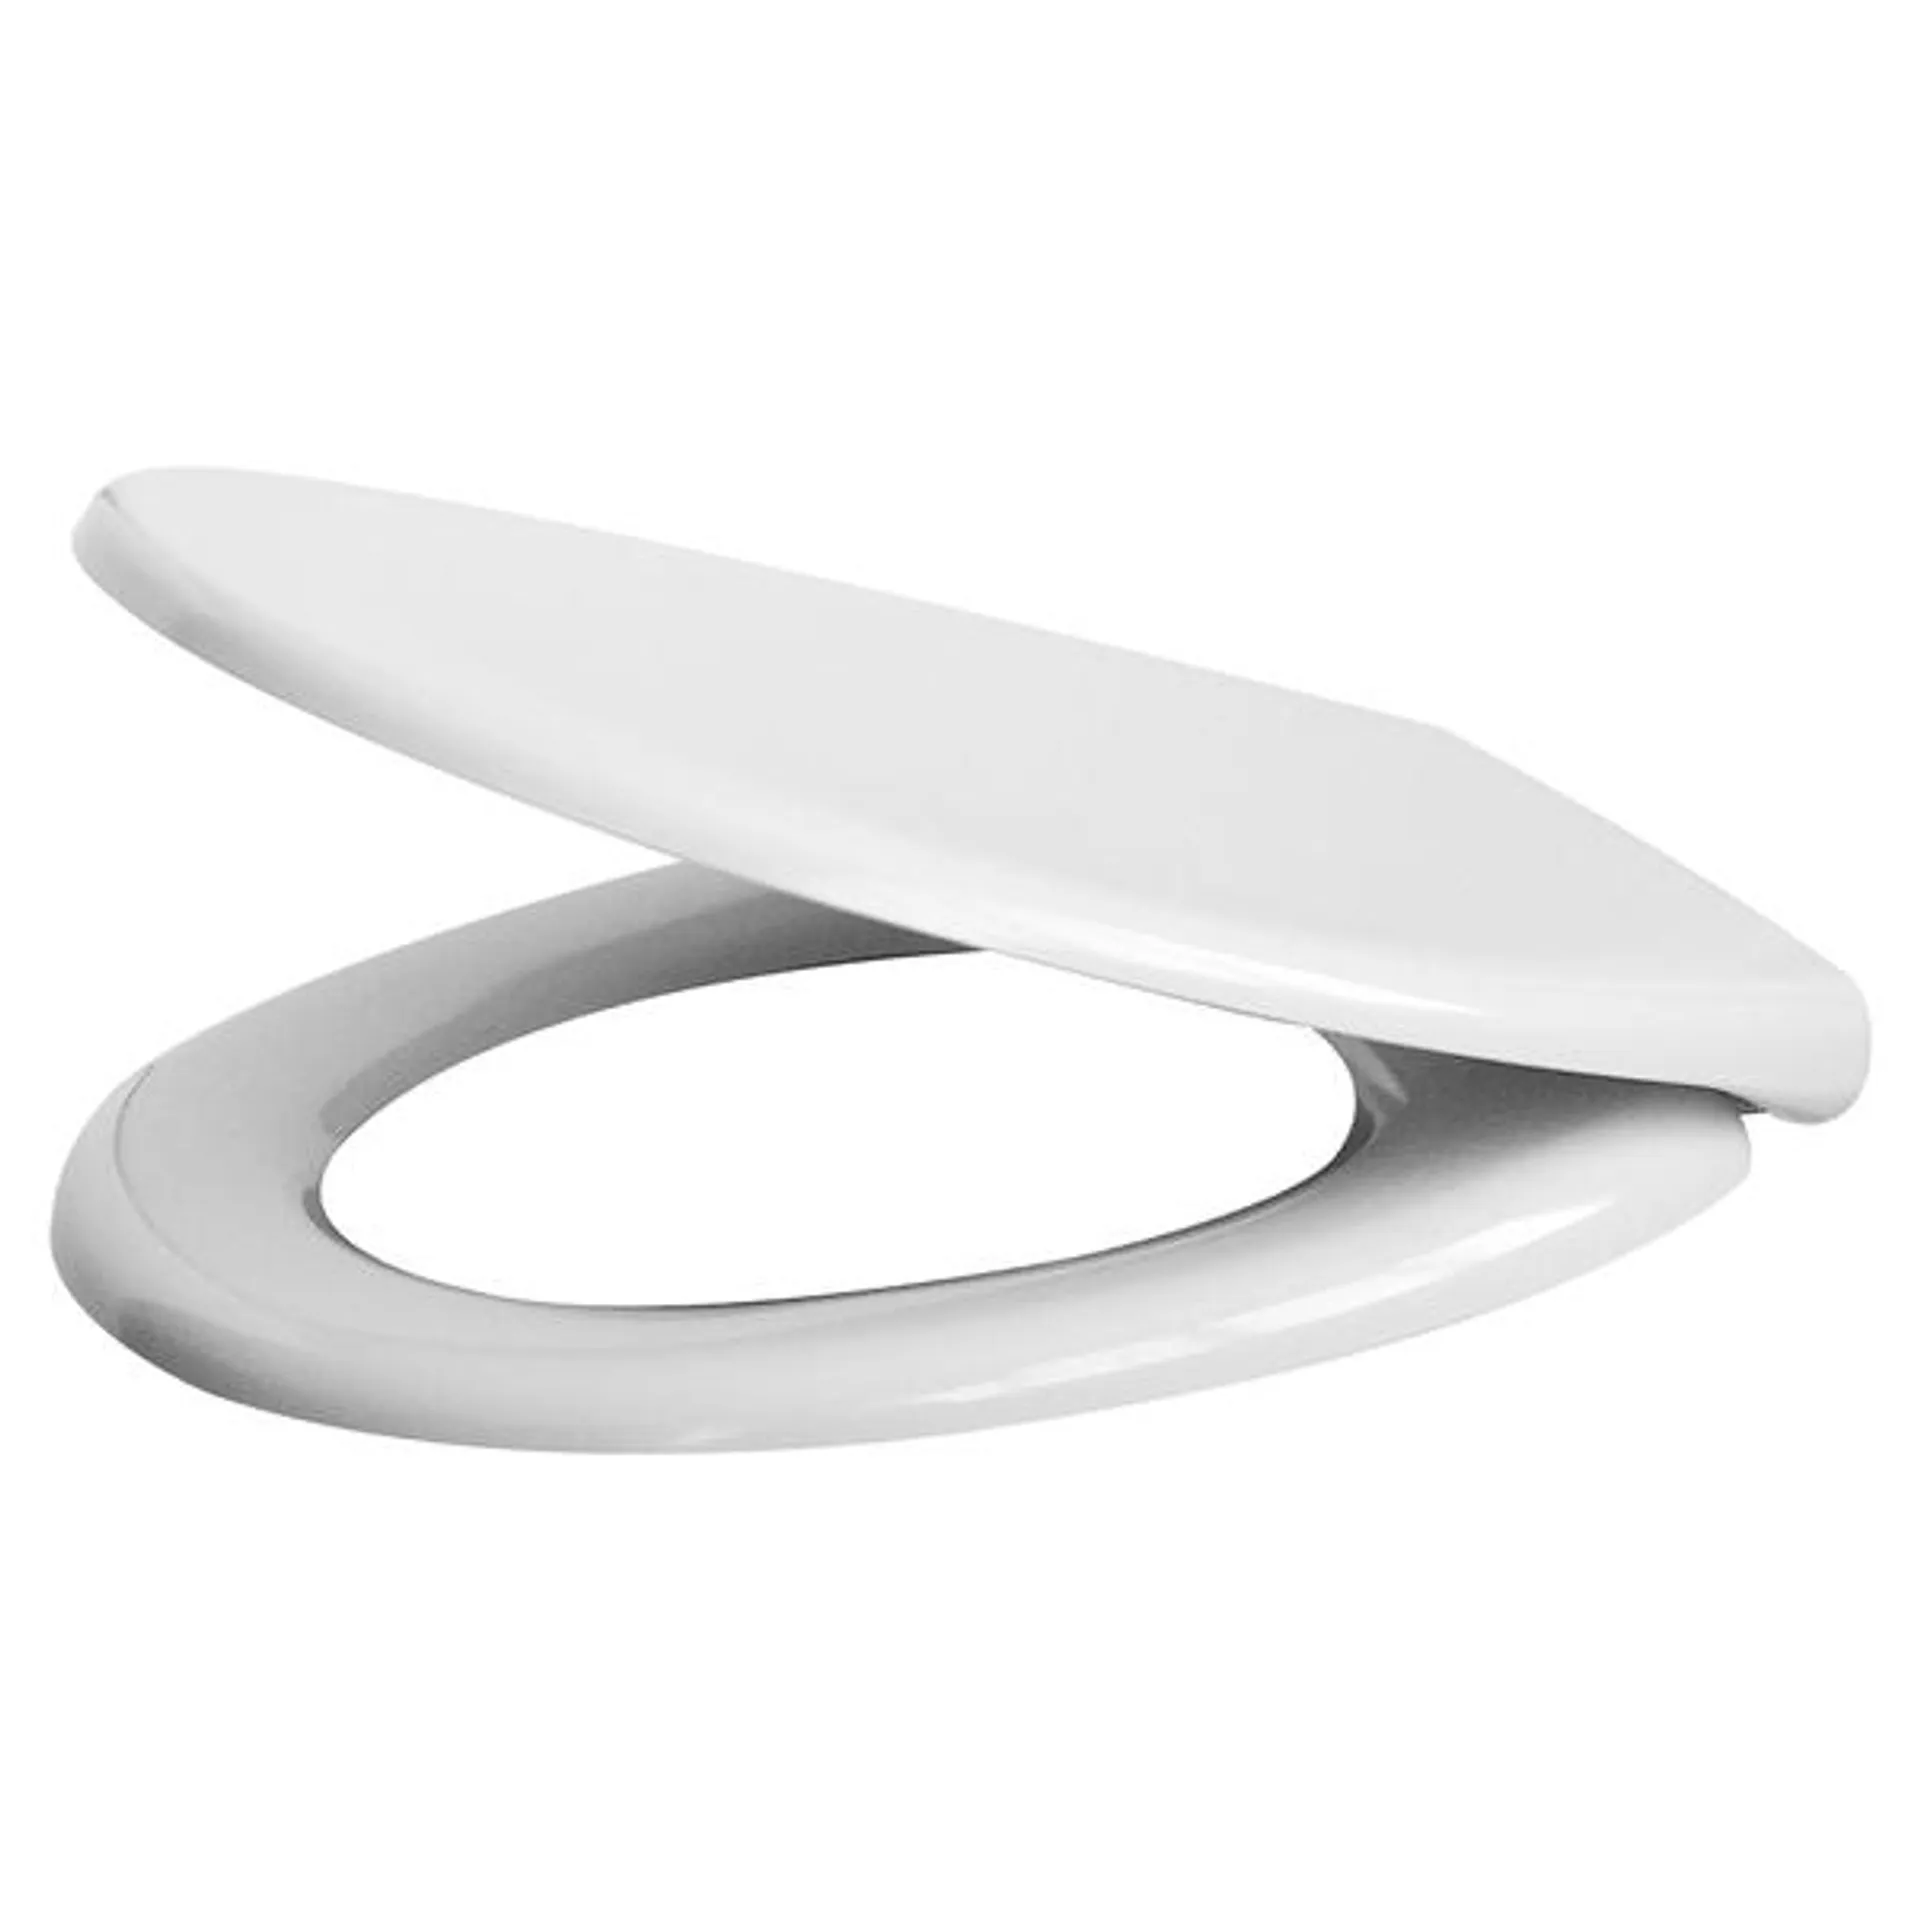 Copriwater universale ovale in termoindurente bianco con cerniere acciaio soft close